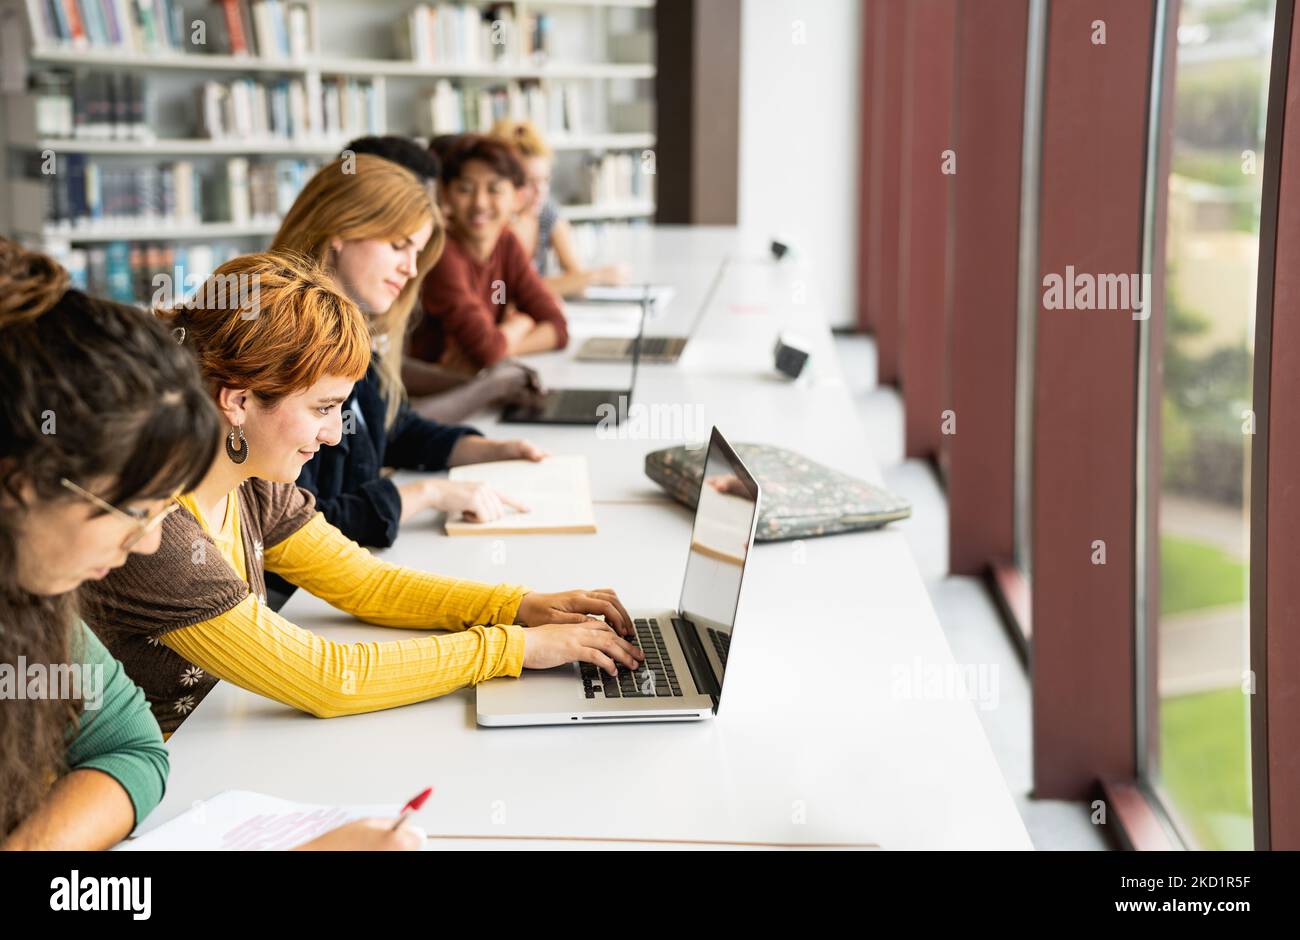 Junge multirassische Menschen studieren in der Bibliothek - Schulbildung Konzept Stockfoto